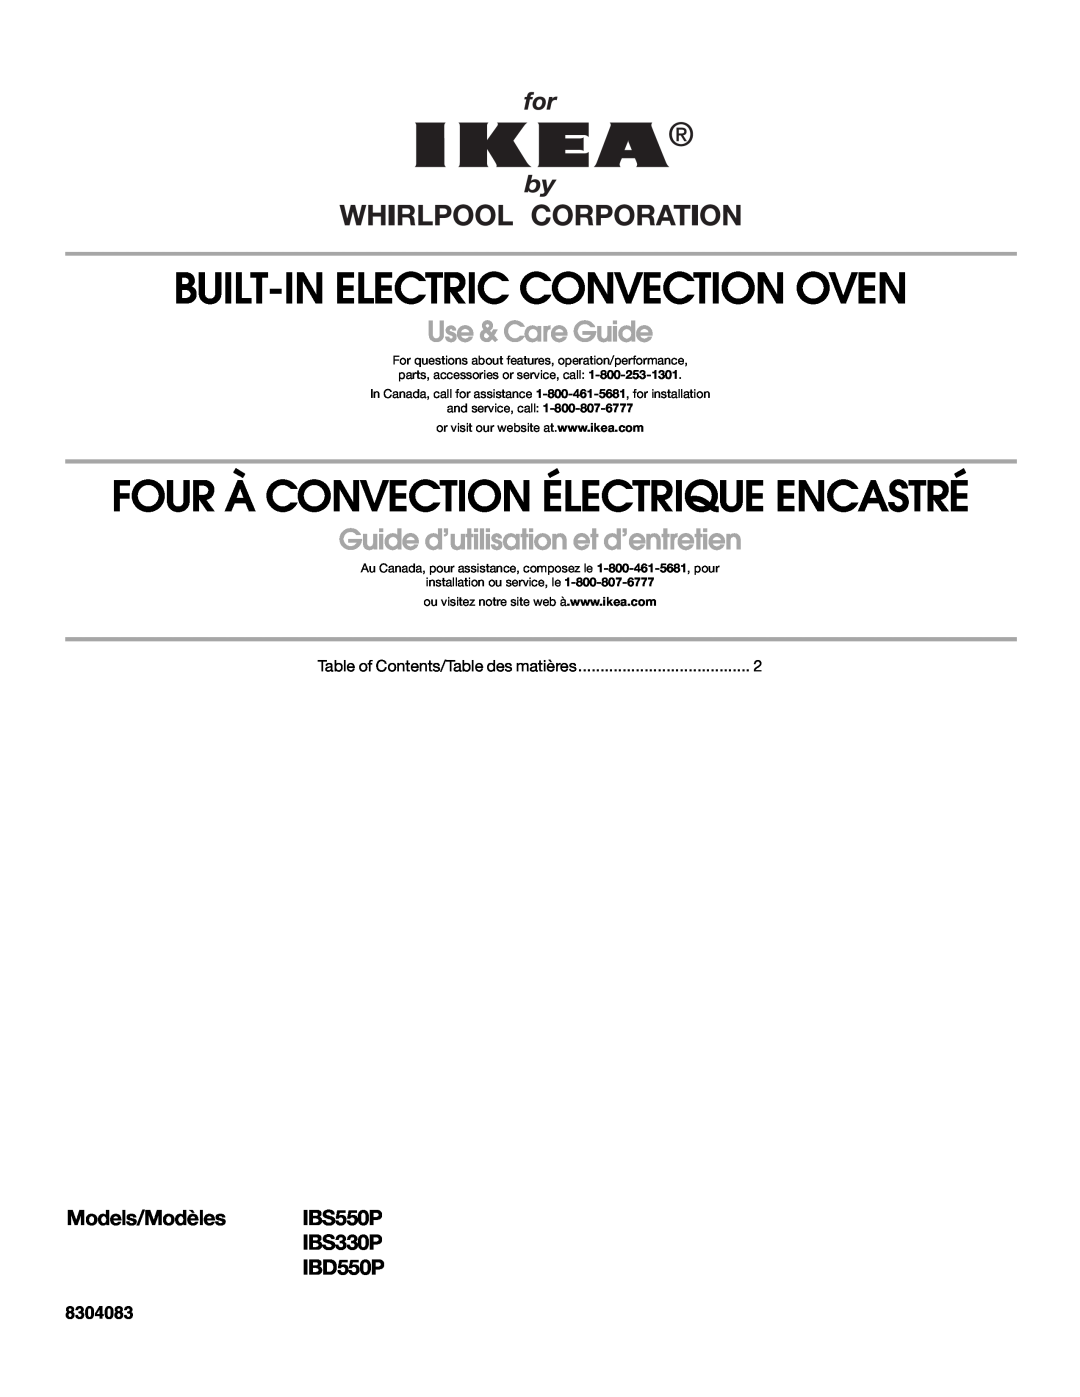 Whirlpool IBS330P manual Built-In Electric Convection Oven, Four À Convection Électrique Encastré, Use & Care Guide 